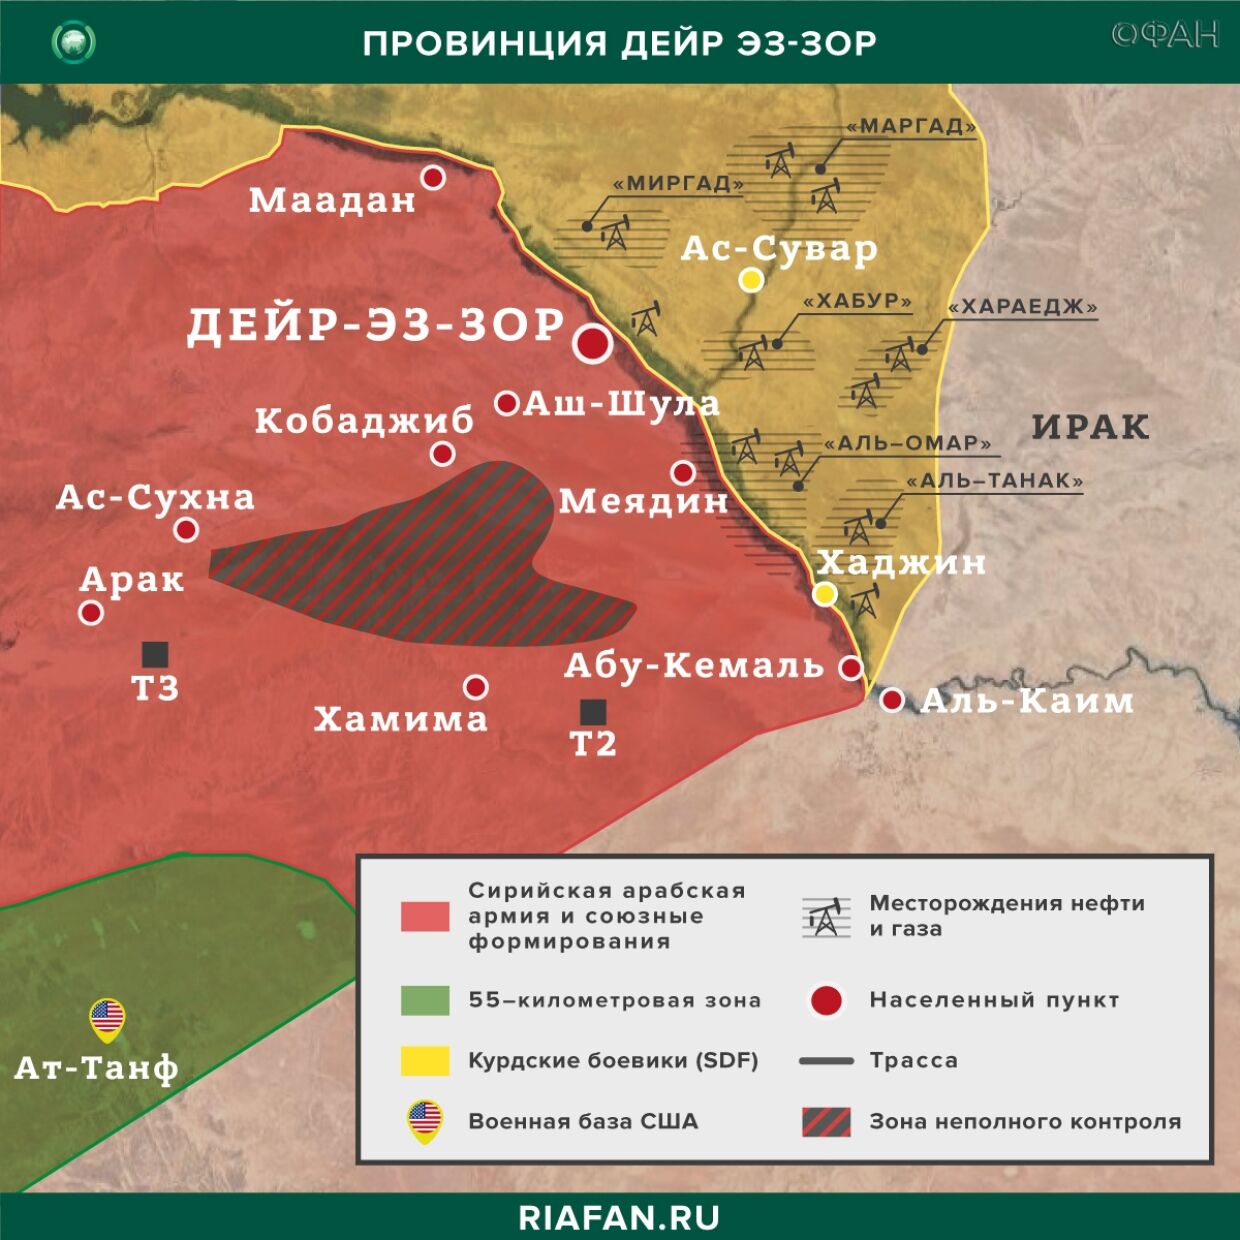 Nouvelles de Syrie 9 Juin 06.00: протесты в зонах контроля SDF в Дейр-эз-Зоре, САА пресекла попытку продвижения боевиков в Идлибе